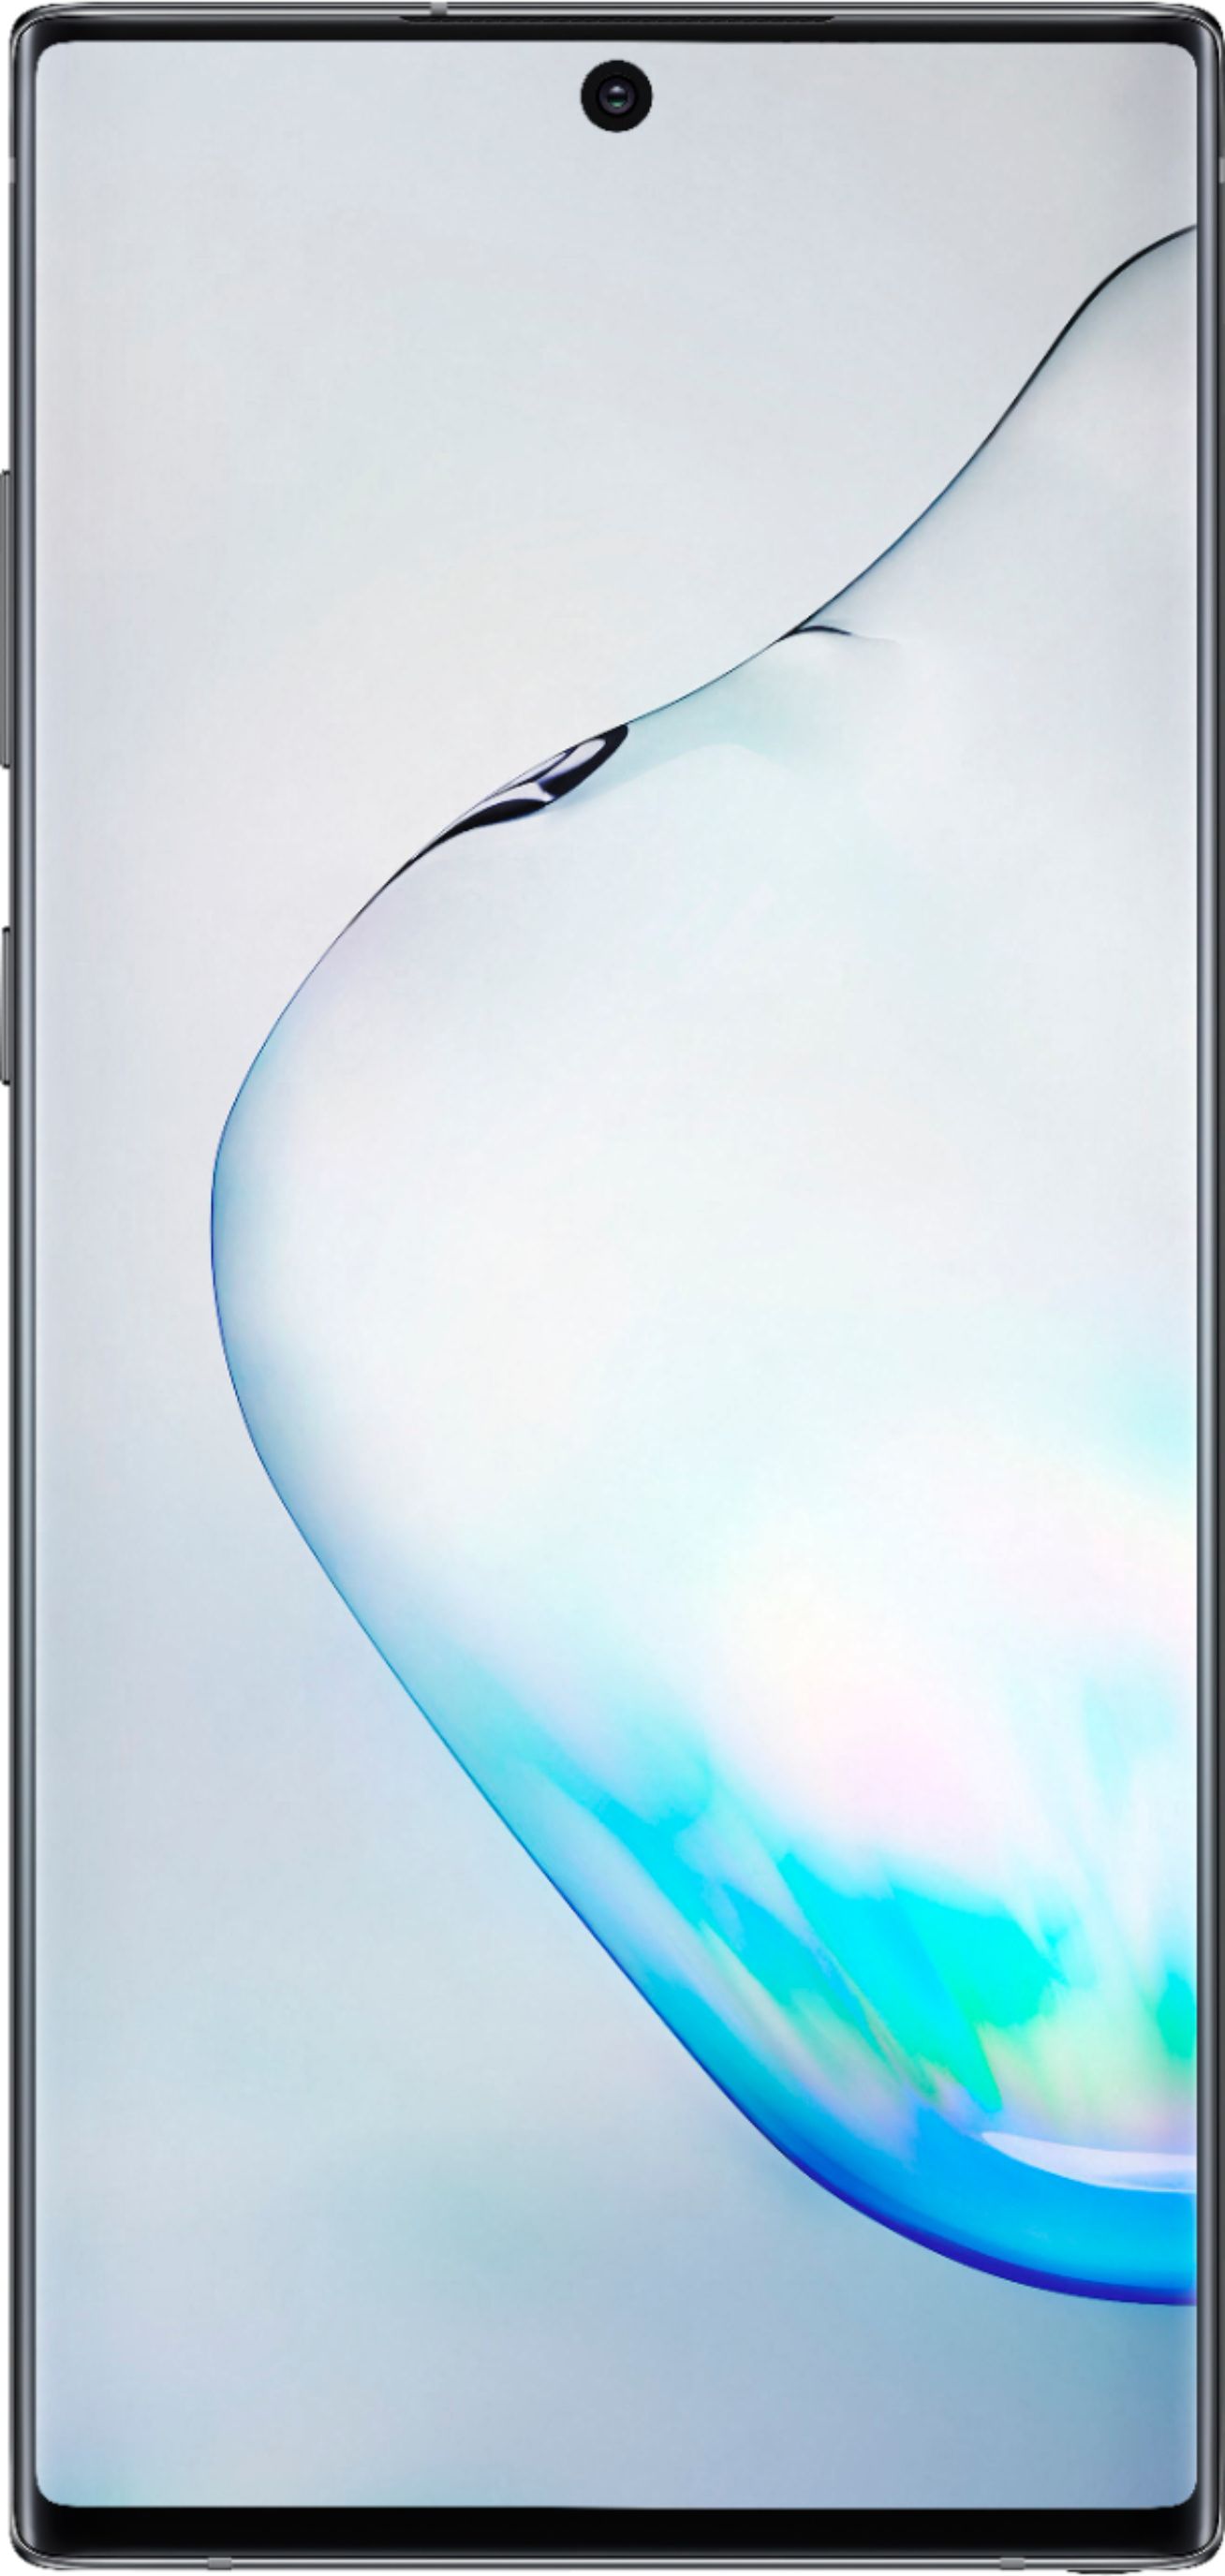 Samsung Galaxy Note 10, 256GB, Aura Black - Fully Unlocked (Renewed)